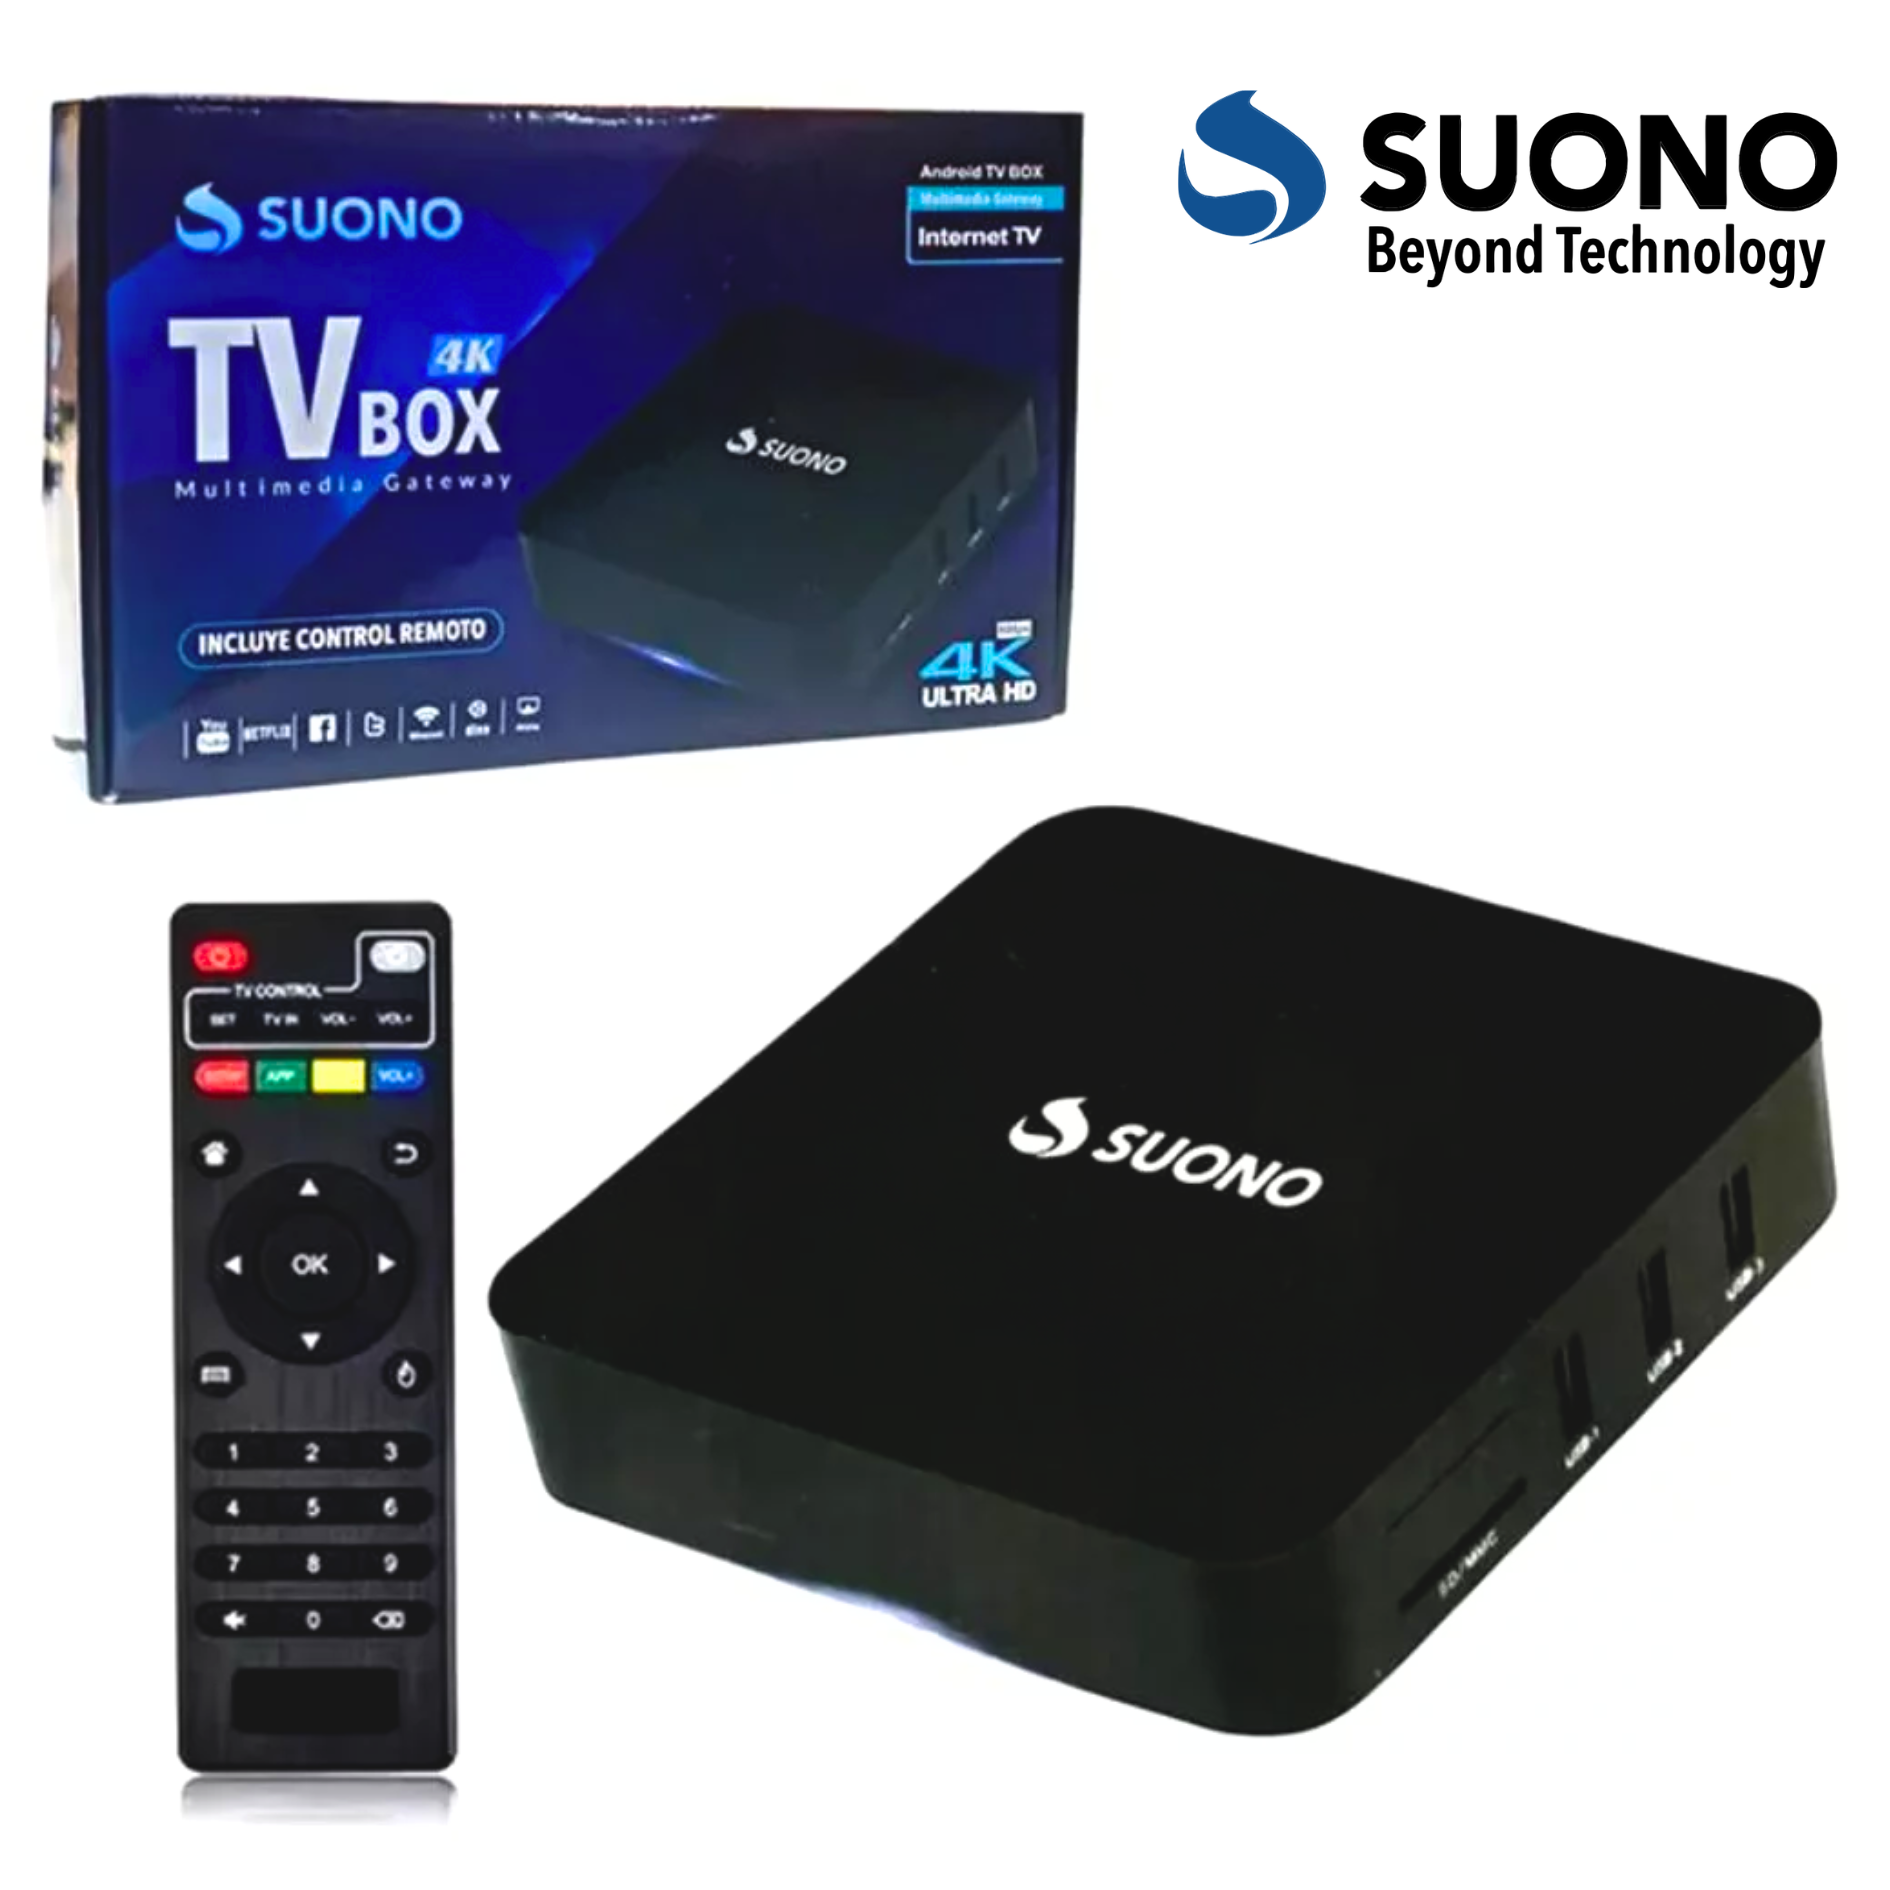 TV BOX SUONO 4K ULTRA HD 1 RAM - 16GB - Daz Importadora